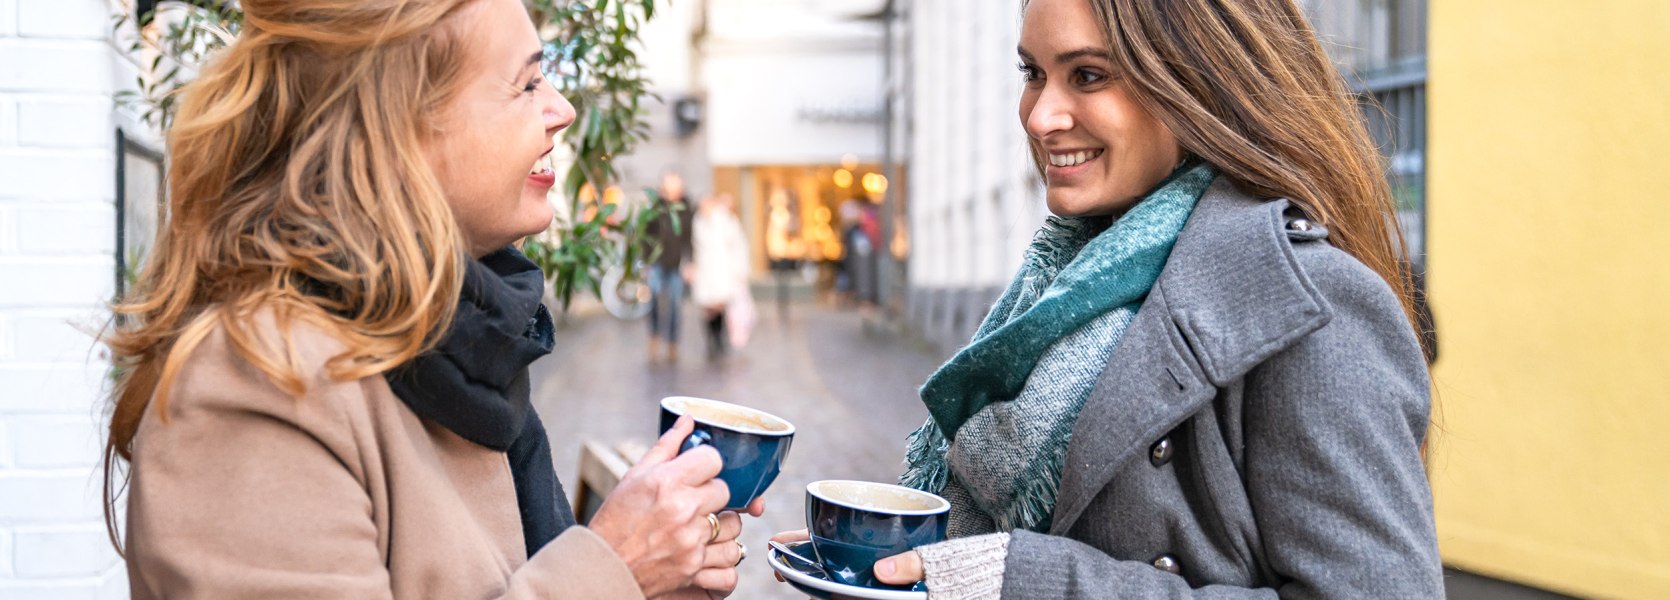 Zwei Frauen genießen in der Oldenburger Innenstadt einen Kaffee.